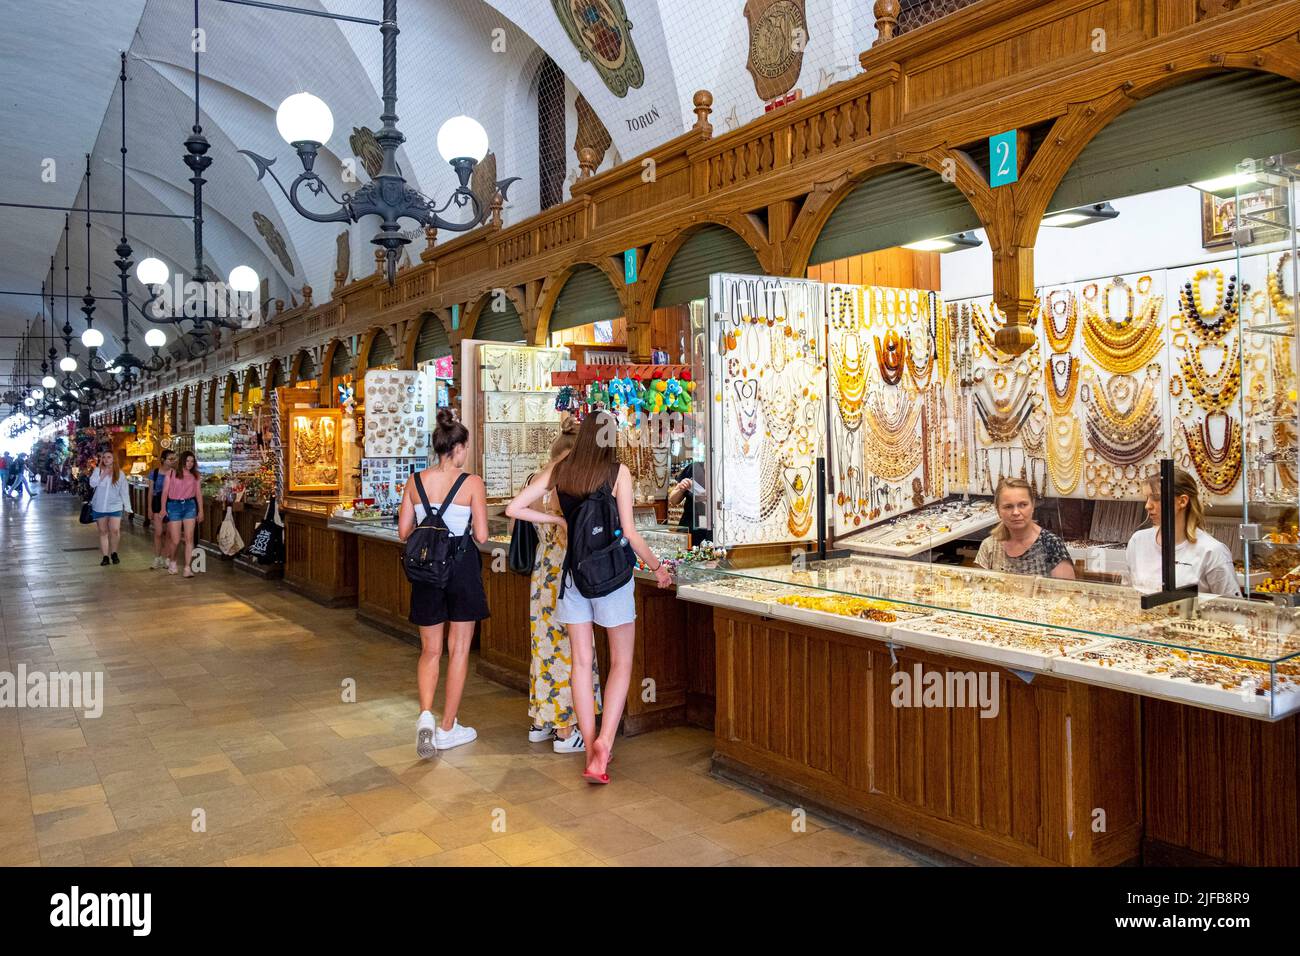 Polen, Kleinpolen, Krakau, Altstadt (Stare Mastro), von der UNESCO zum Weltkulturerbe erklärt, Marktplatz (Rynek Glowny) mit der alten Tuchhalle und Souvenirläden Stockfoto